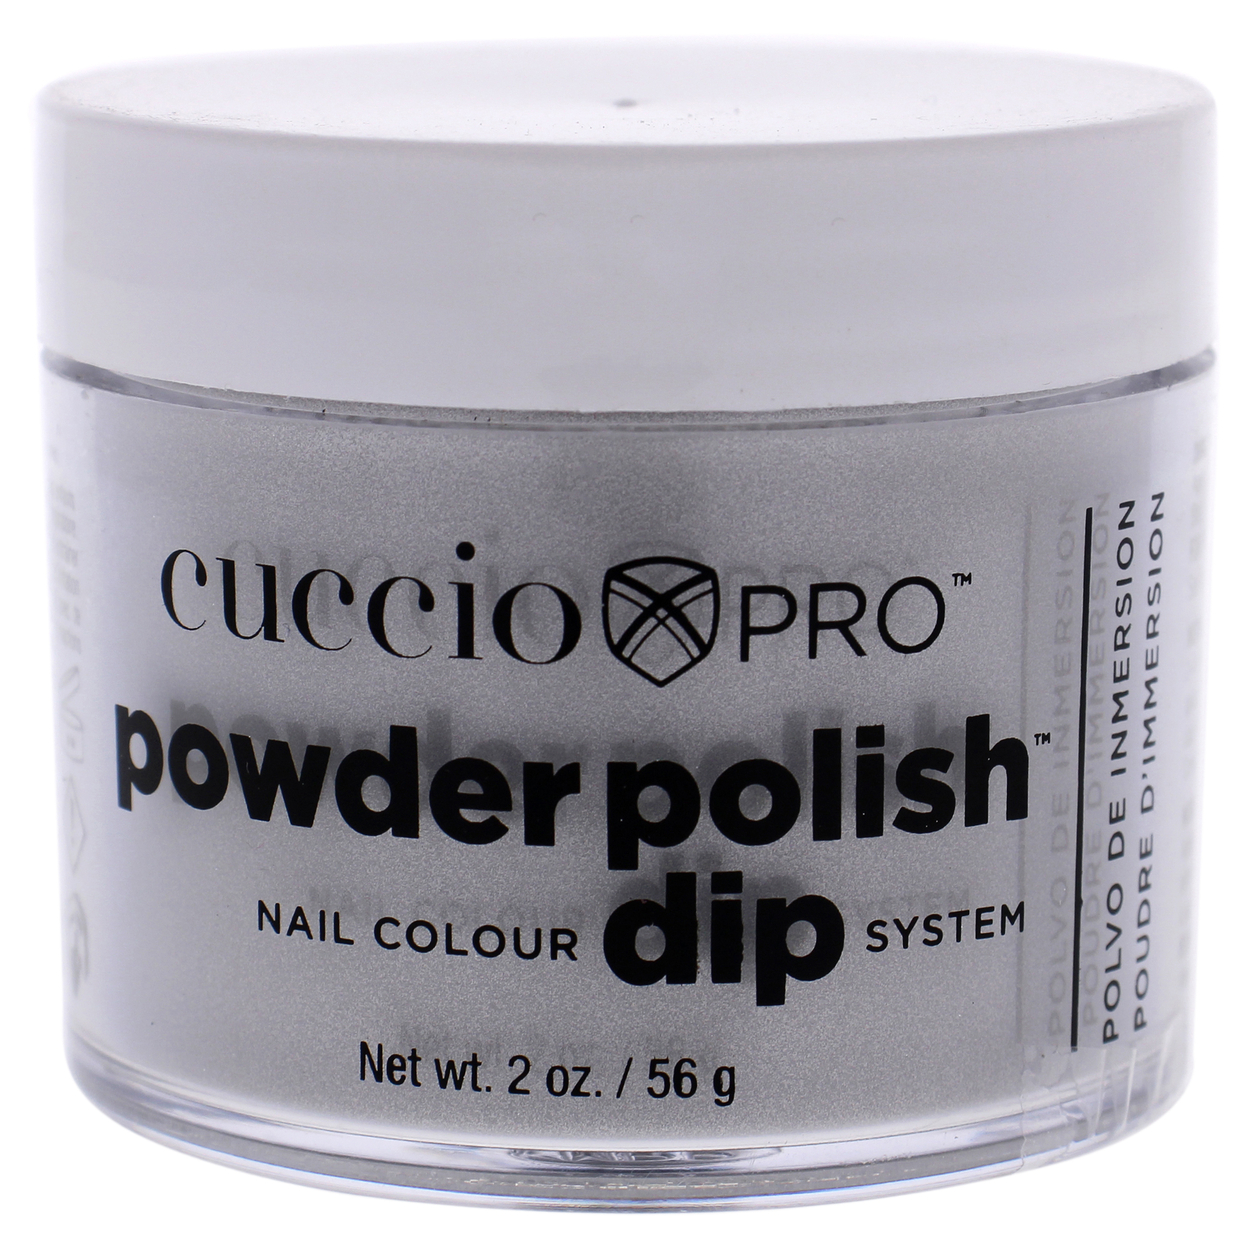 Cuccio Pro Pro Powder Polish Nail Colour Dip System - Just A Prosecco Nail Powder 1.6 Oz